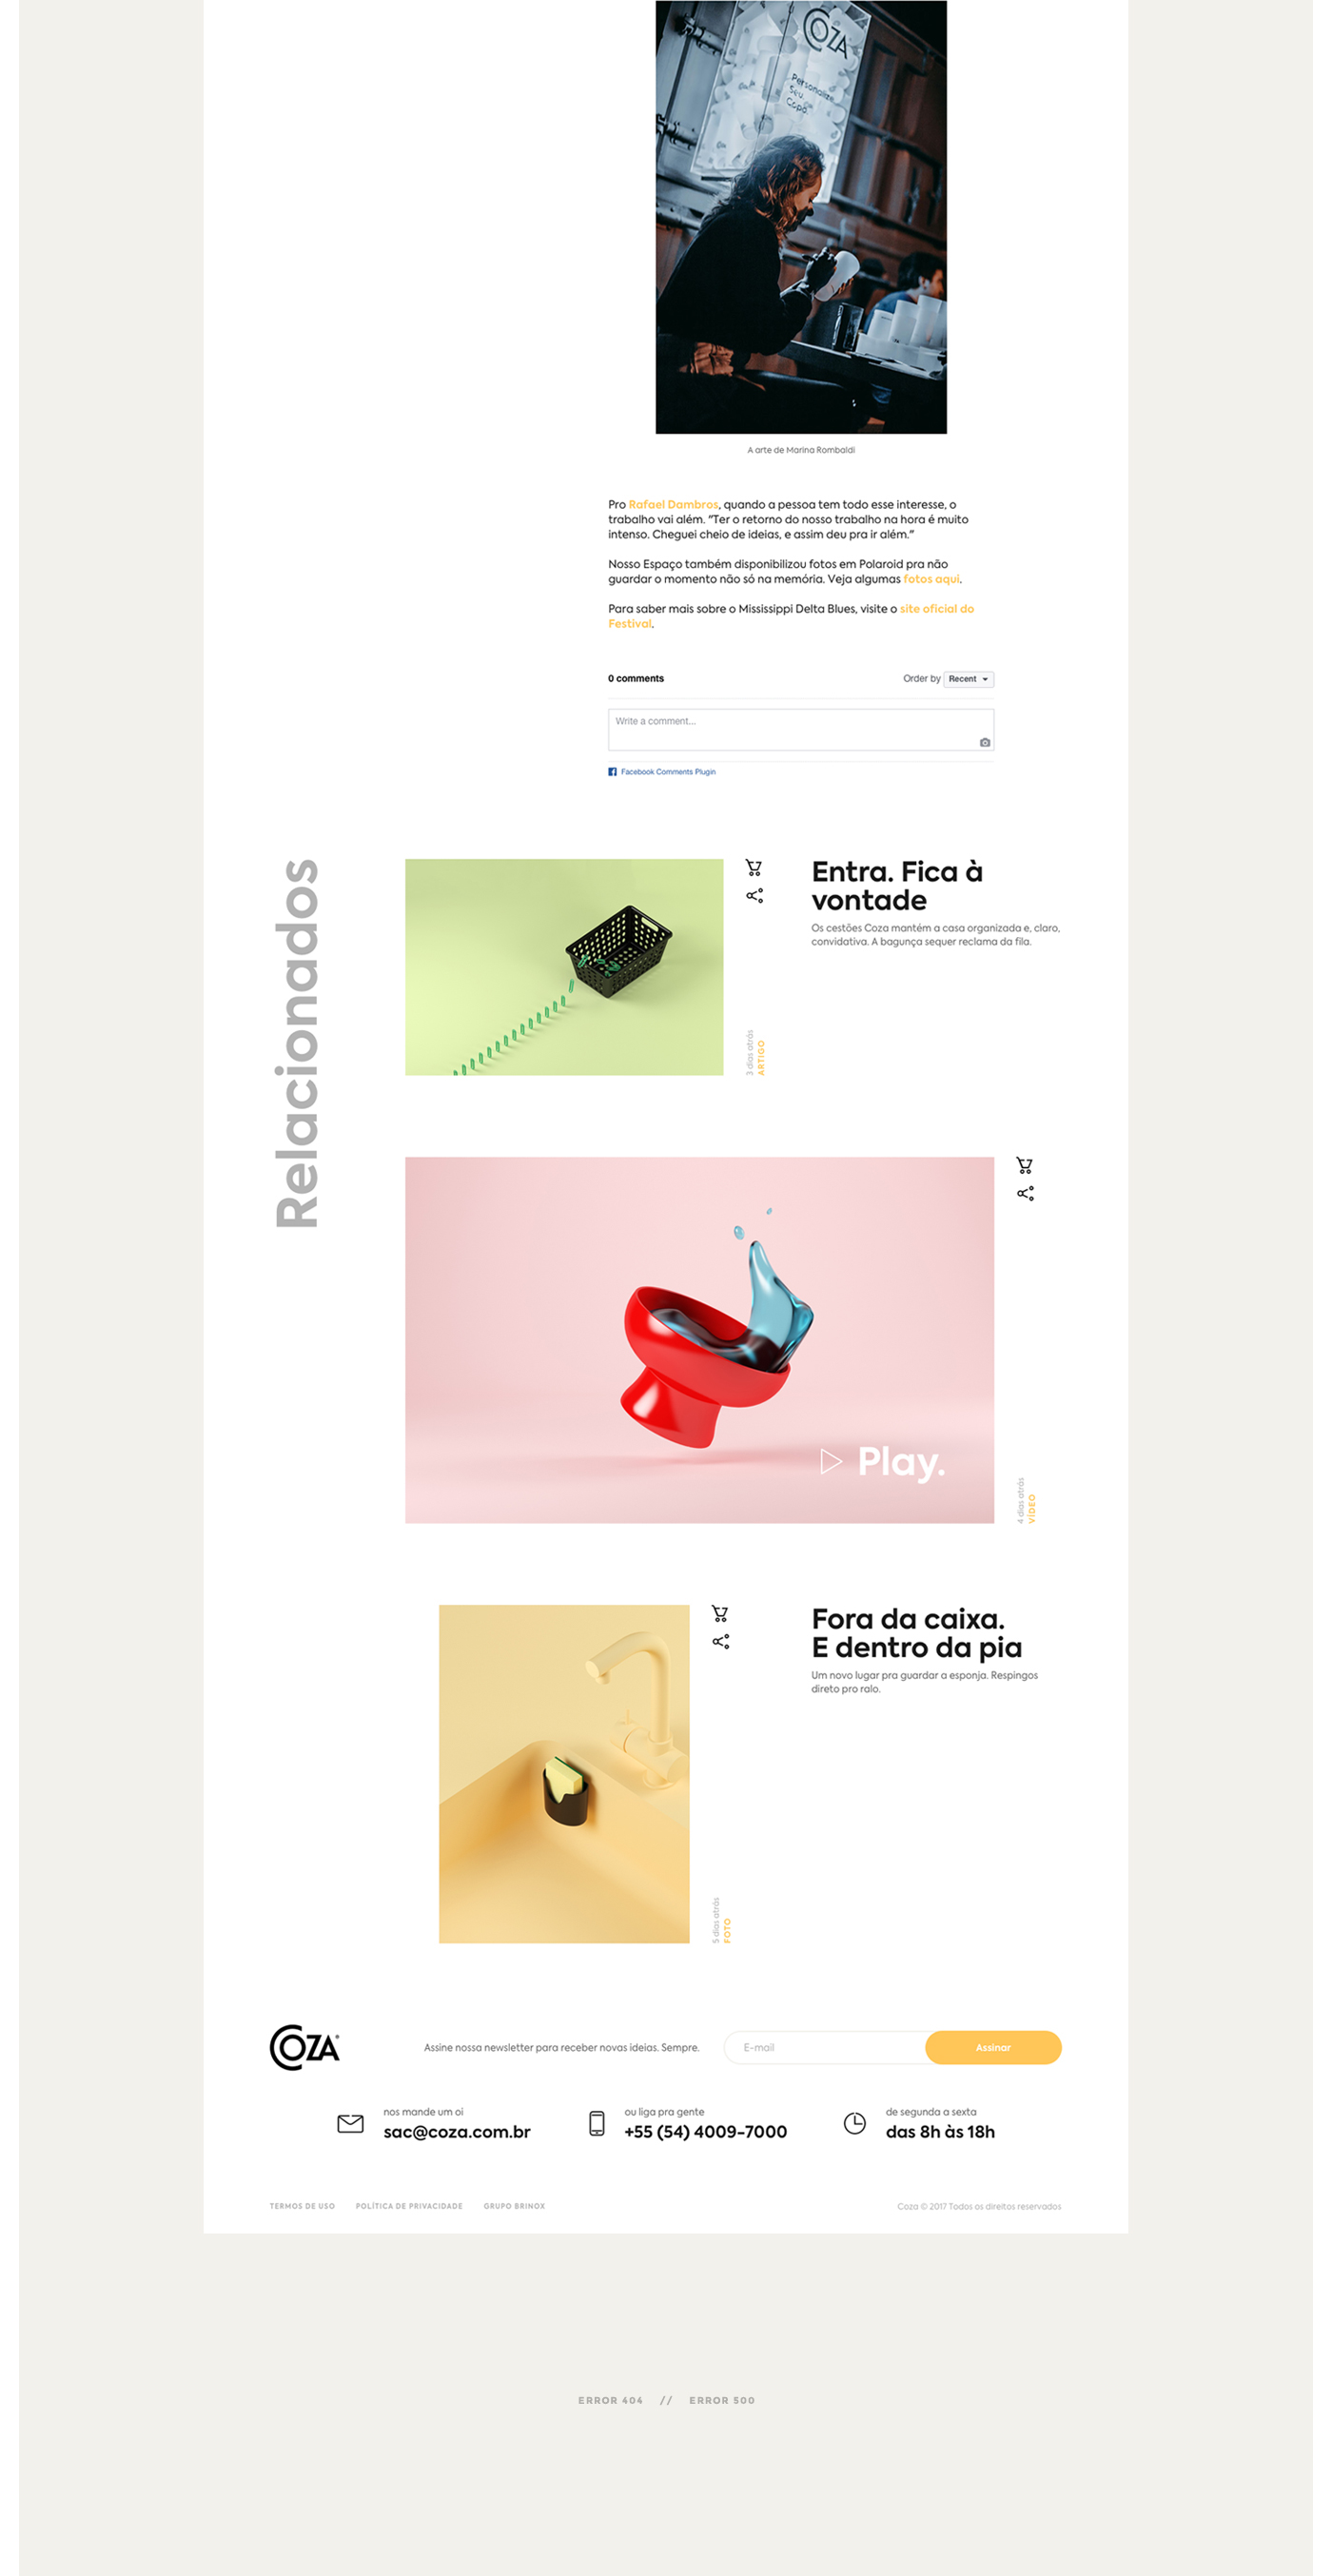 巴西塑料产品领导品牌Coza的网站设计欣赏